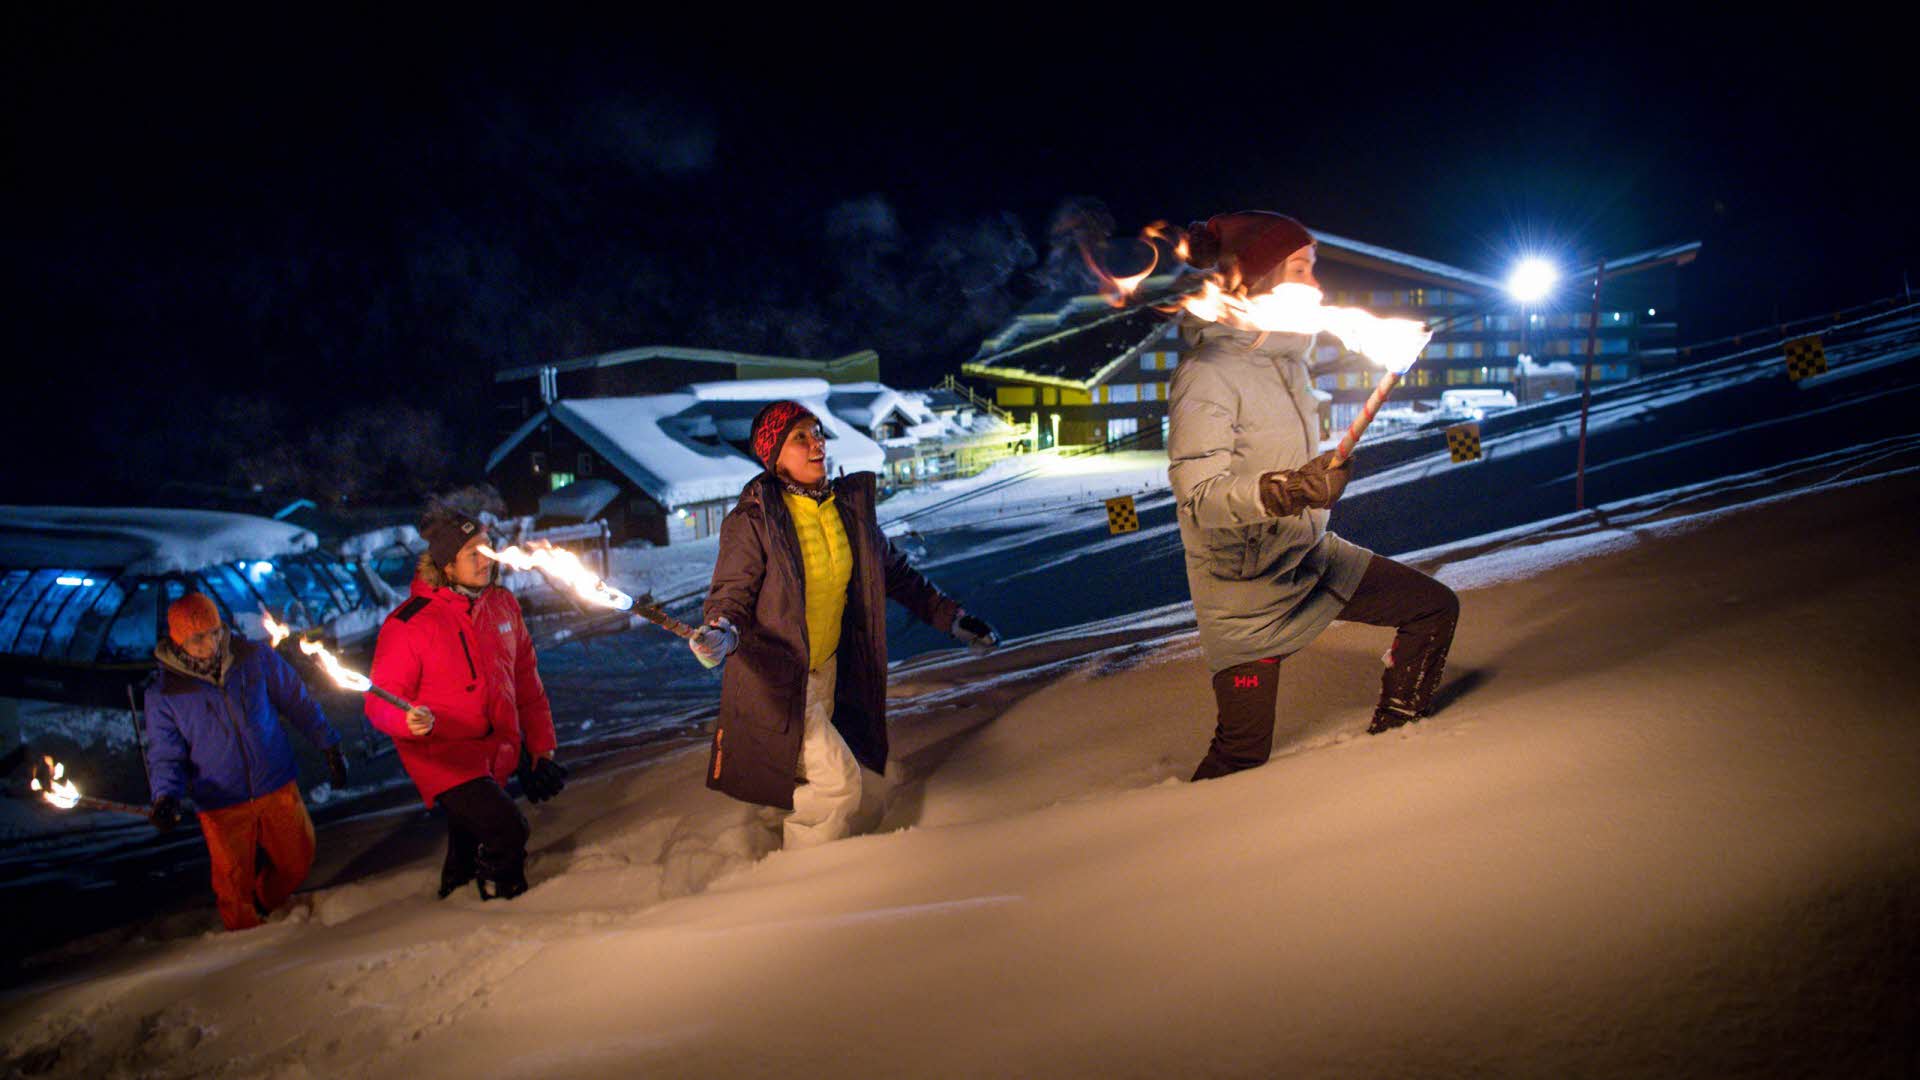 Devant la station de ski de Myrkdalen, 4 personnes marchent sur une colline escarpée la nuit en tenant des torches allumées dans leurs mains. La neige est profonde.